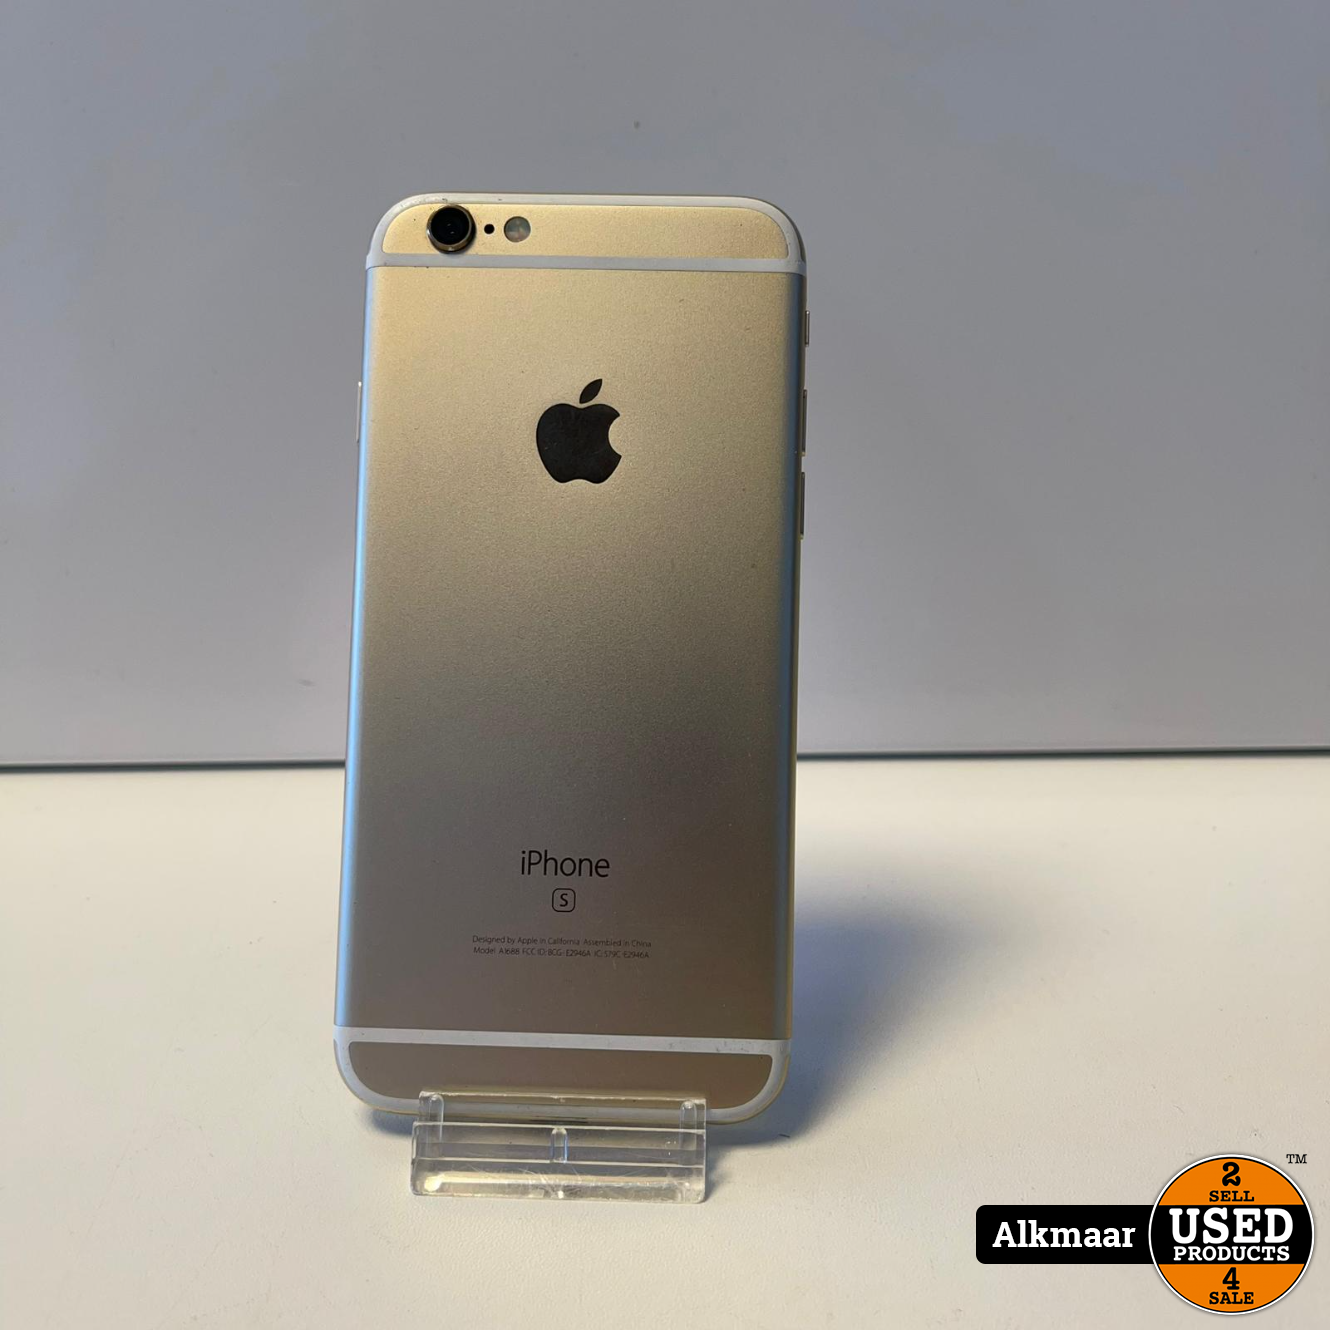 Sceptisch bad Patois Apple iPhone 6s 16GB Goud | 100% | In nette staat - Used Products Alkmaar